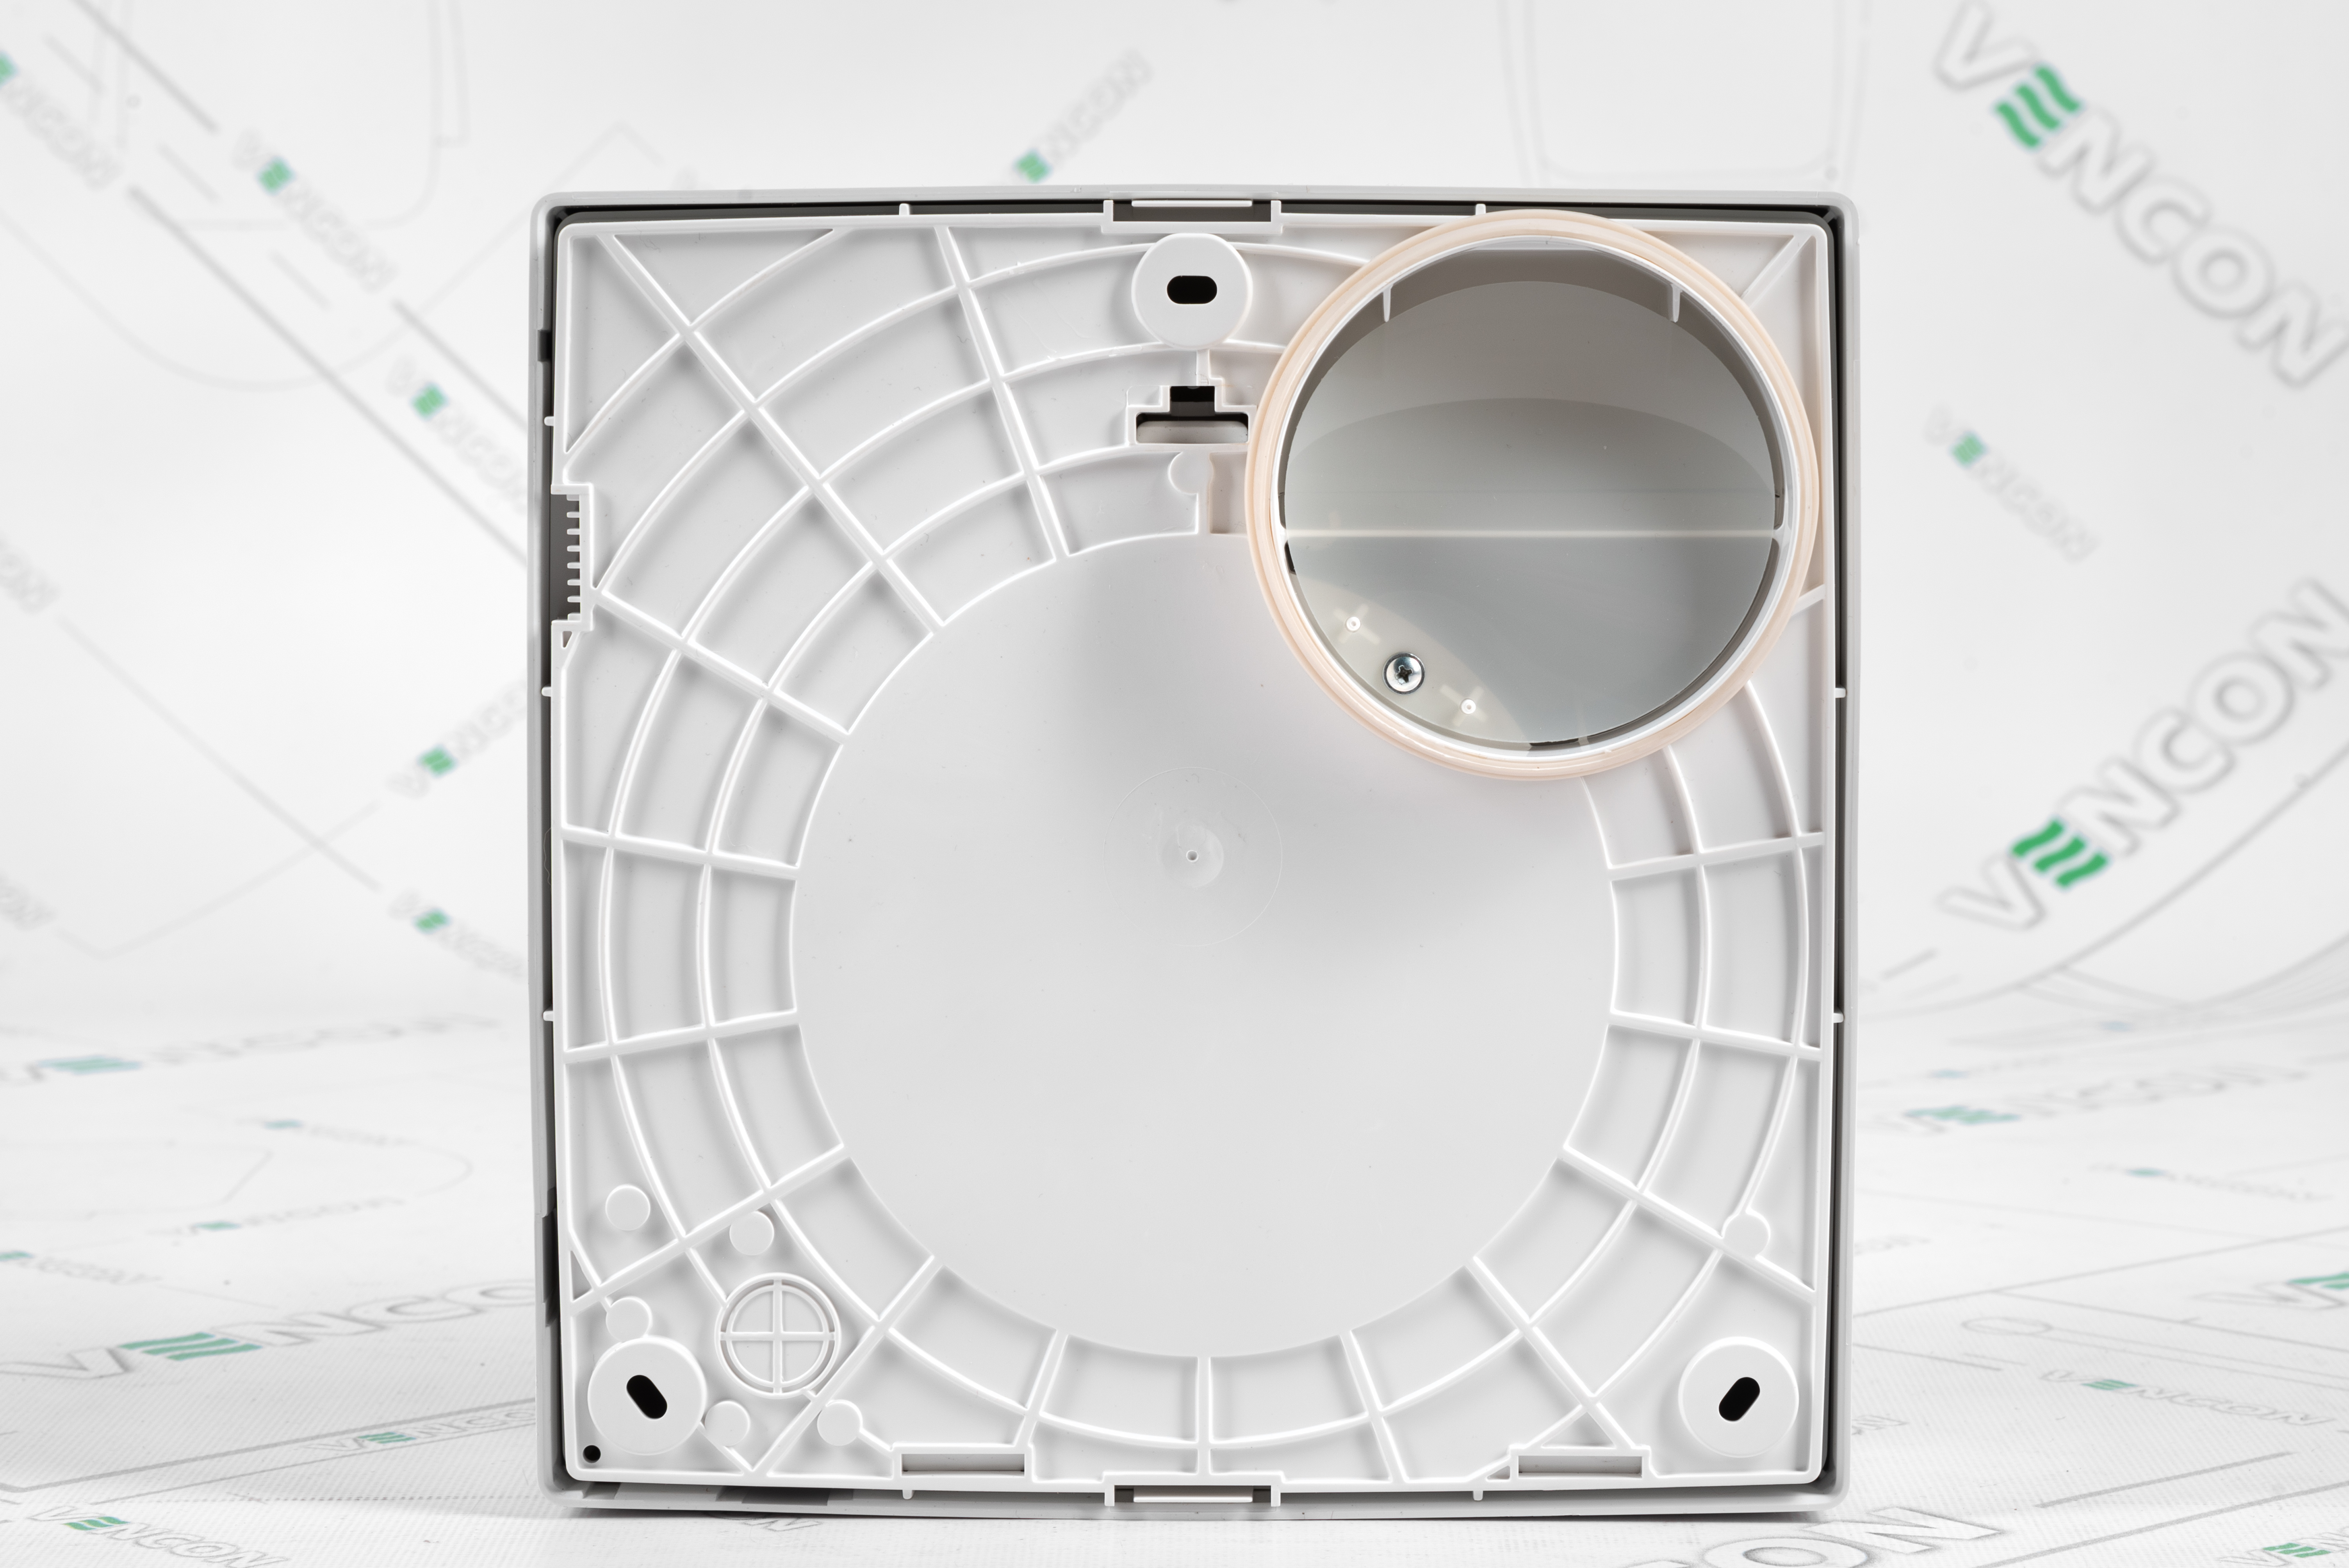 Вытяжной вентилятор Vortice Vort Quadro Micro 100 T отзывы - изображения 5